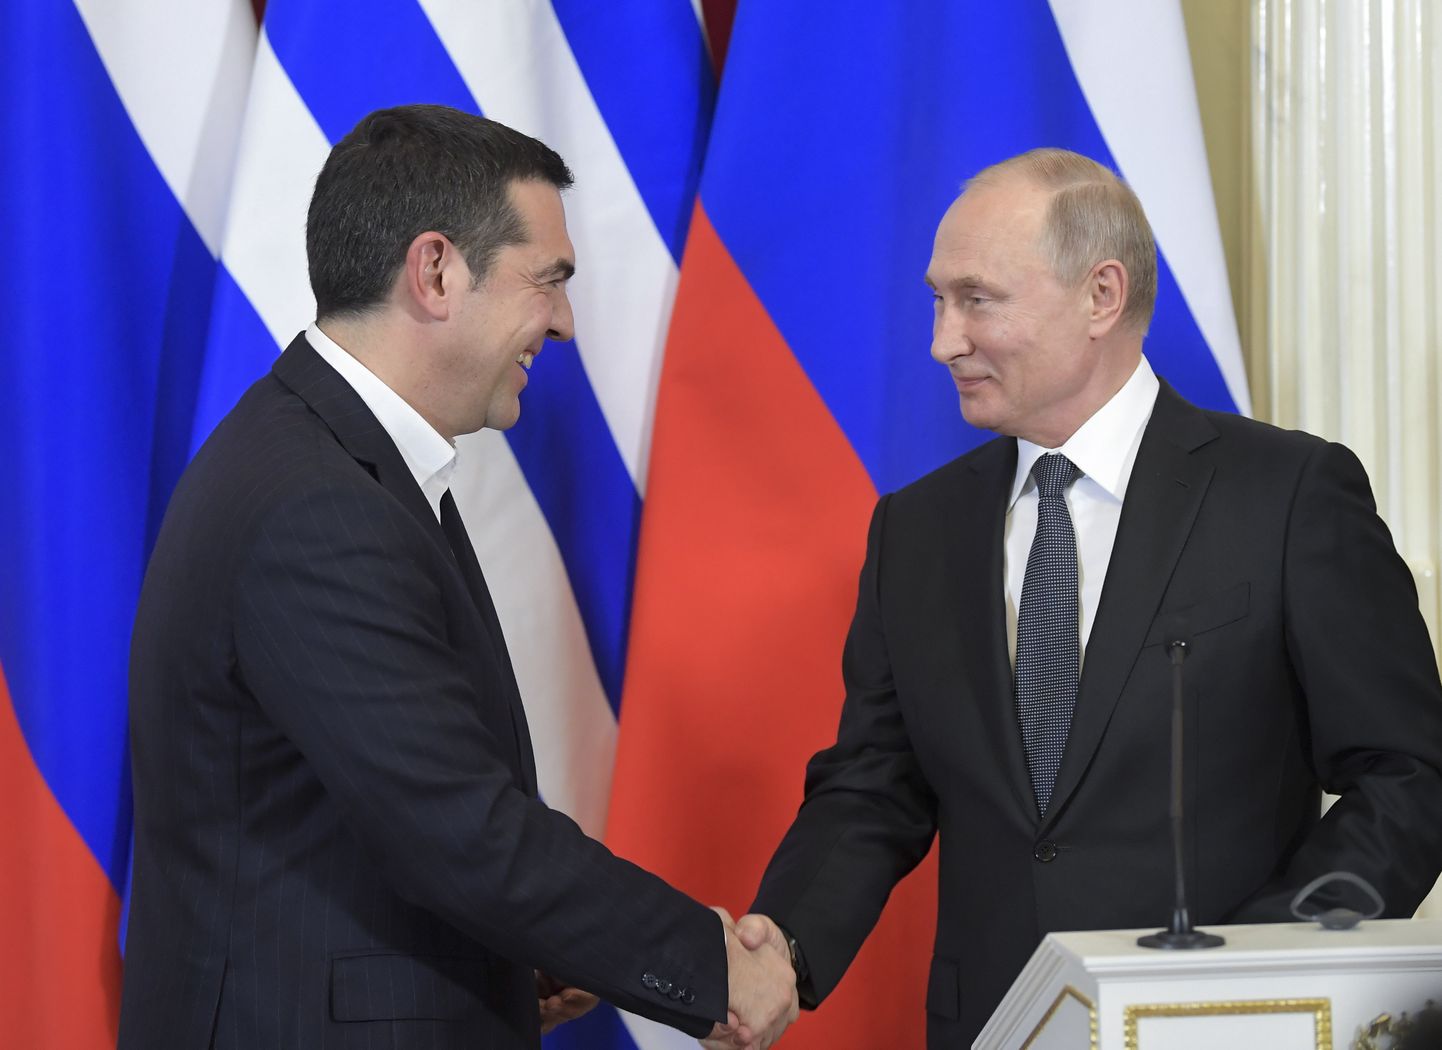 Kreeka peaminister Alexis Tsipras ja Venemaa president Vladimir Putin